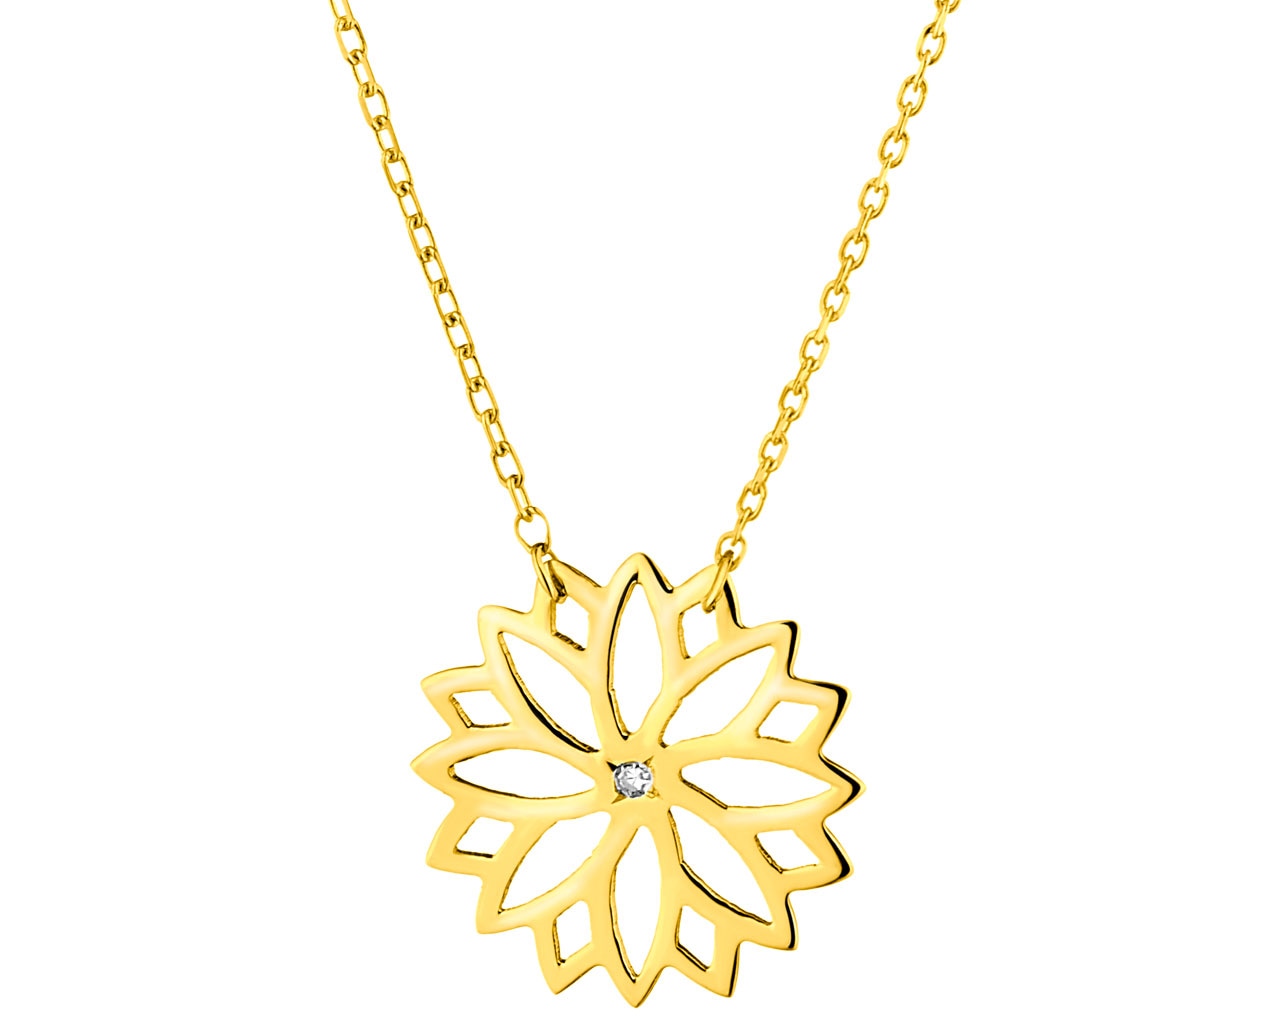 Zlatý náhrdelník s diamantem - květ 0,002 ct - ryzost 585